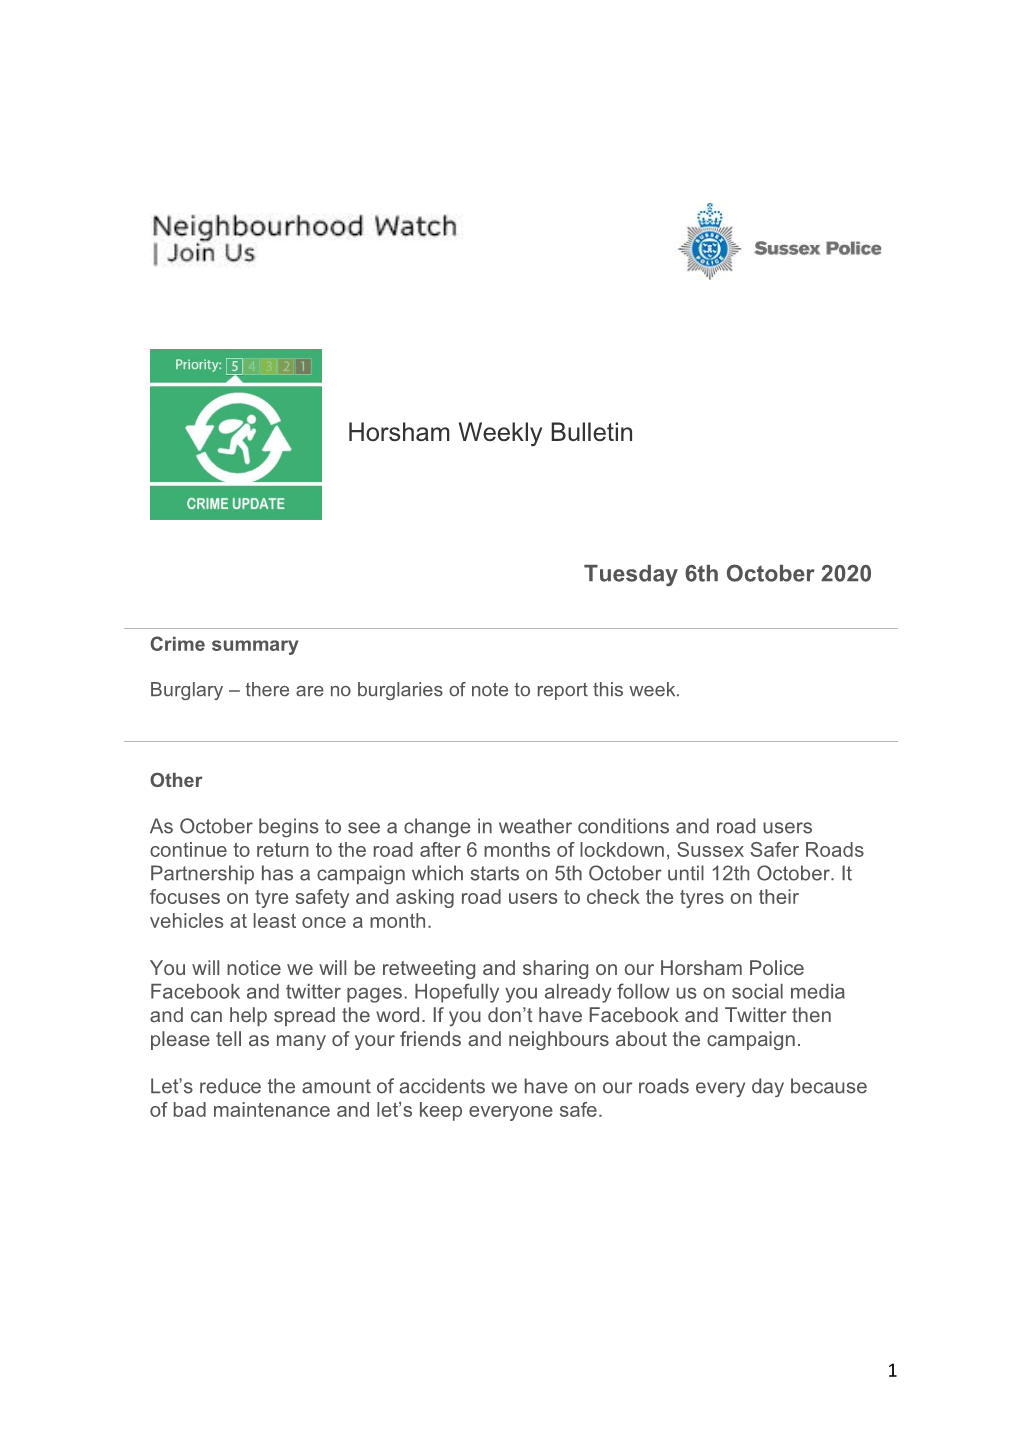 Horsham Weekly Bulletin